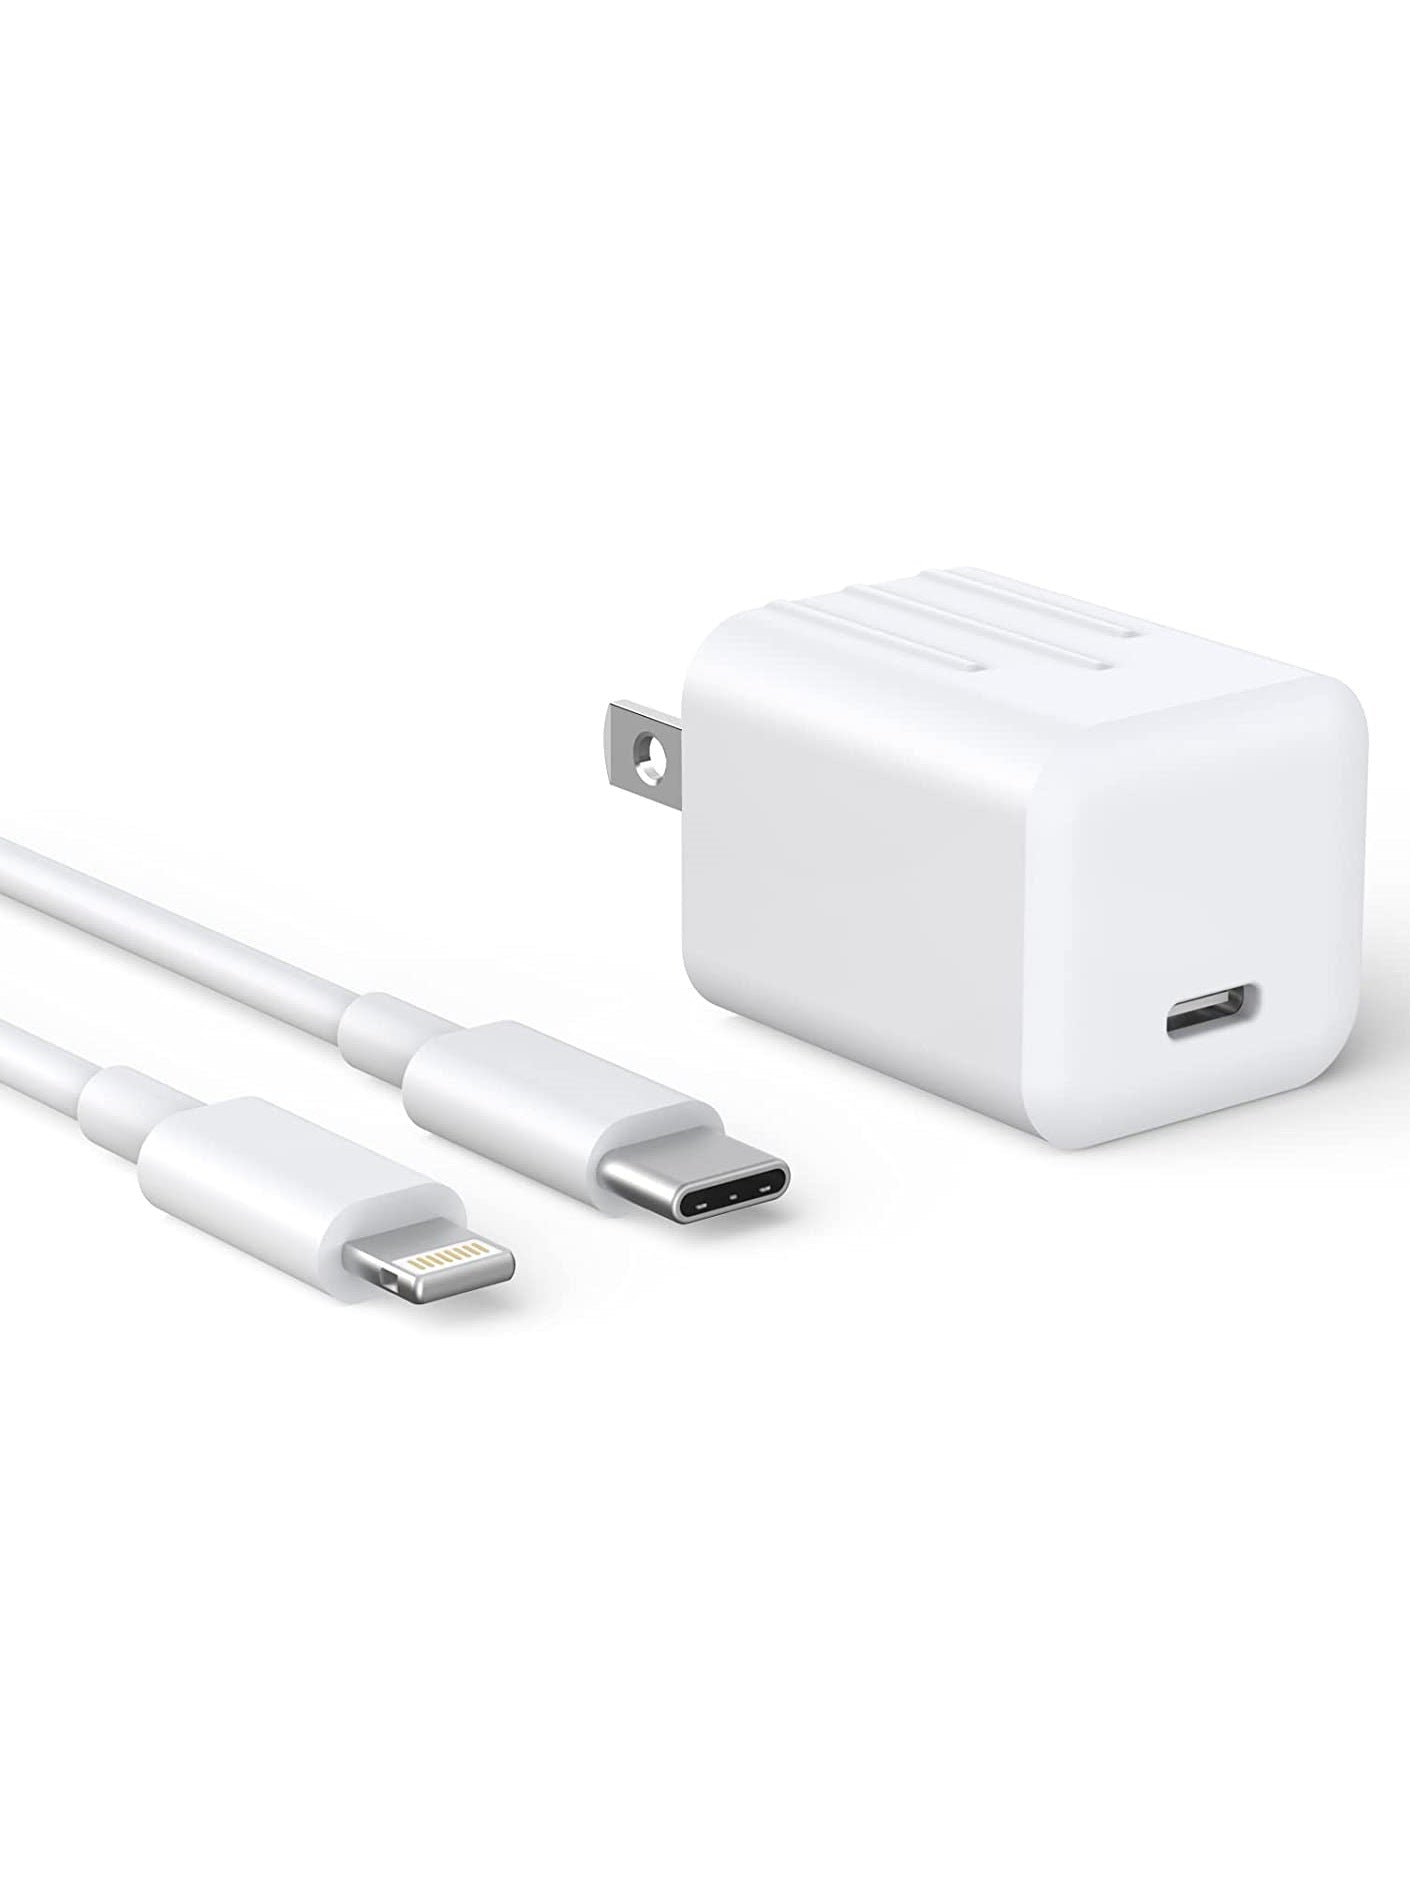  QZIIW Cargador de iPhone, cargador rápido para iPhone,  [certificado MFi], adaptador rápido para iPhone, cable de carga USB C a  Lightning de 6 pies, cargador de pared USB C de 20